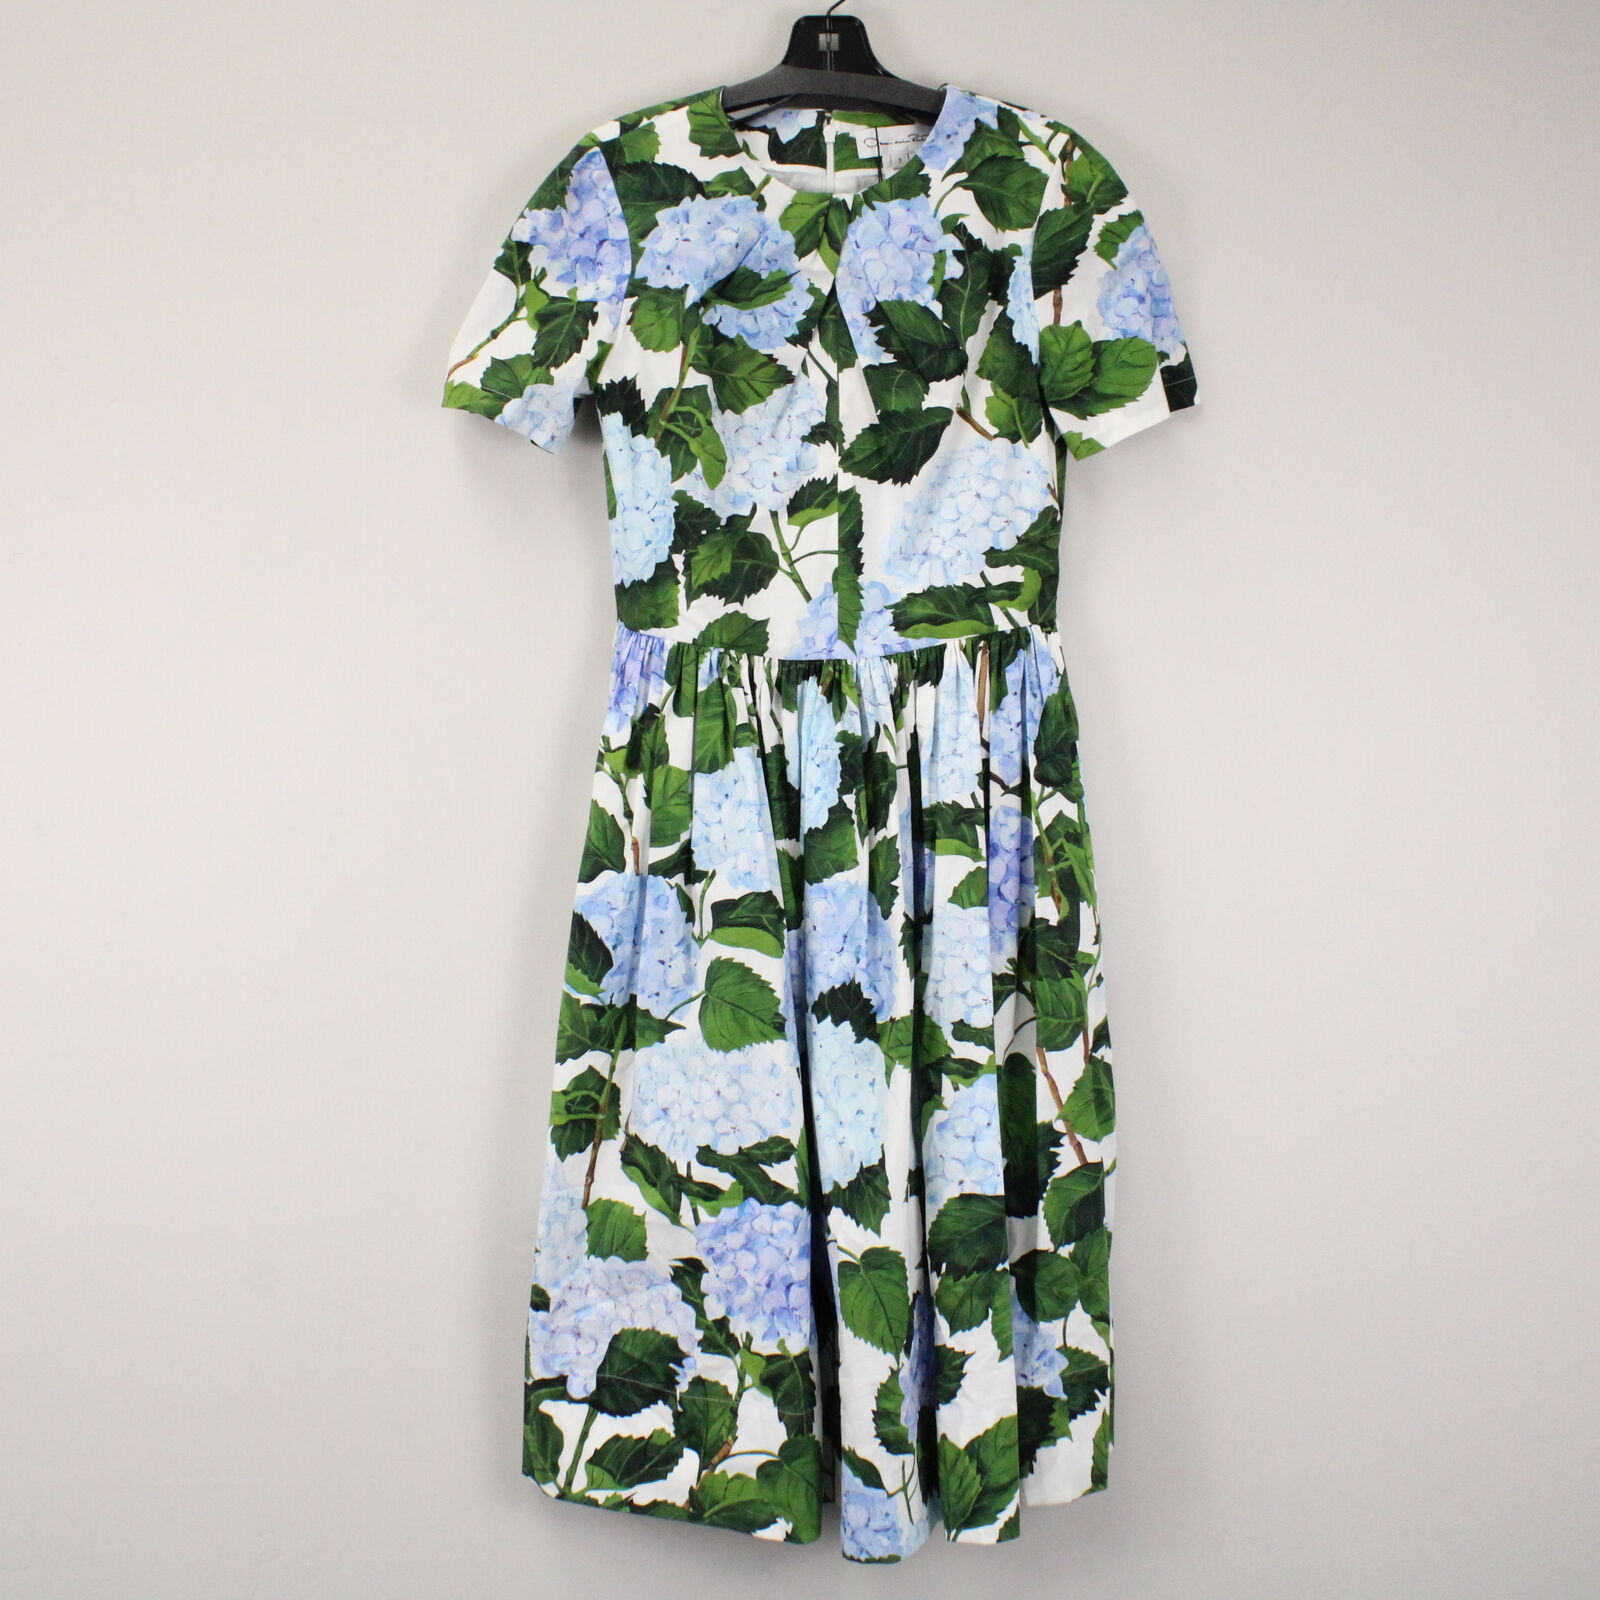 Oscar de la Renta Hydrangea Print Poplin Dress in White/Blue/Green - US 2